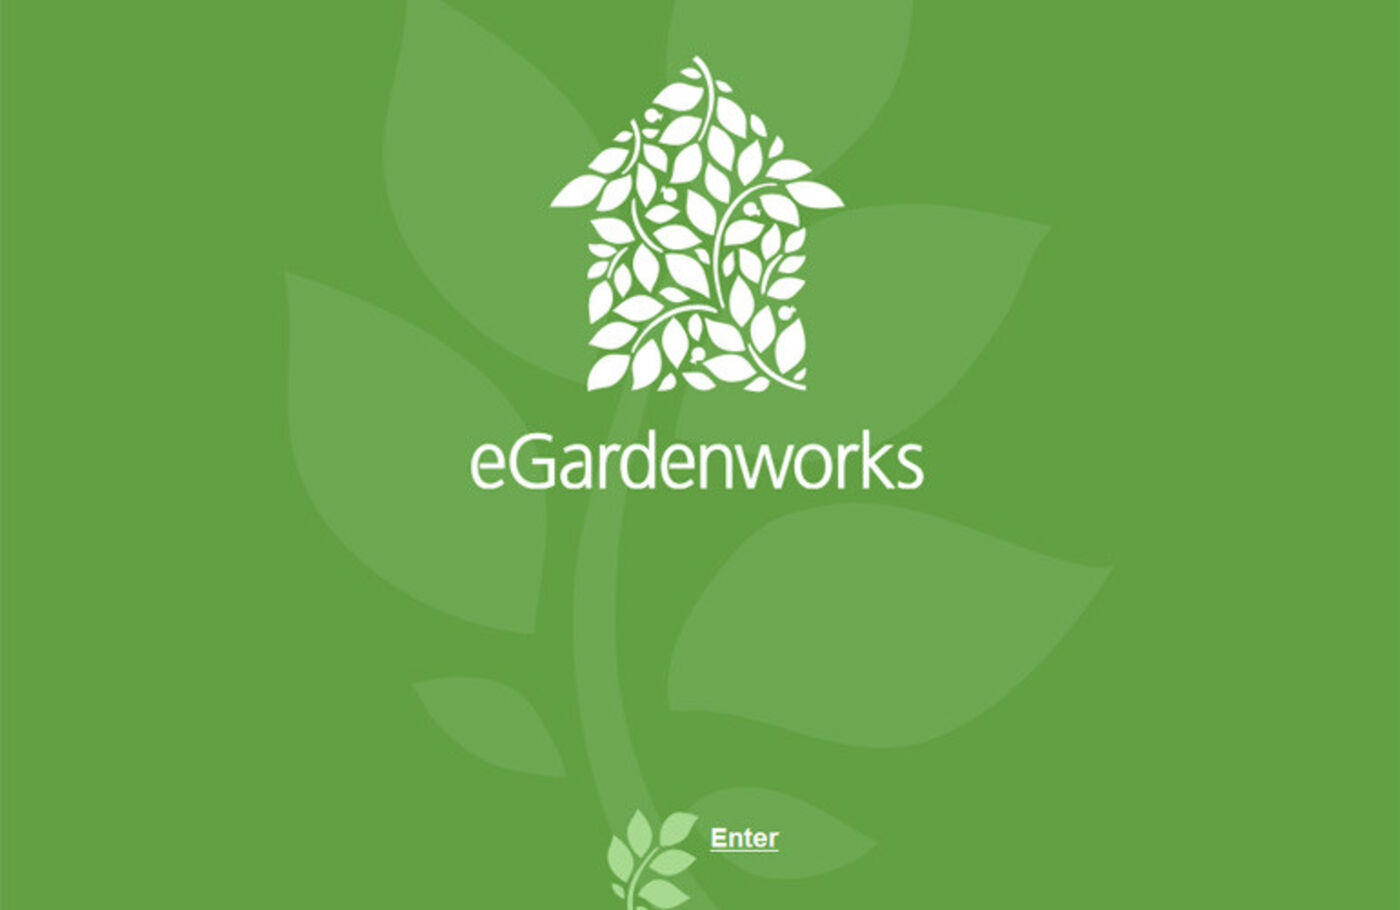 GardenWorks Welcome - GardenWorks